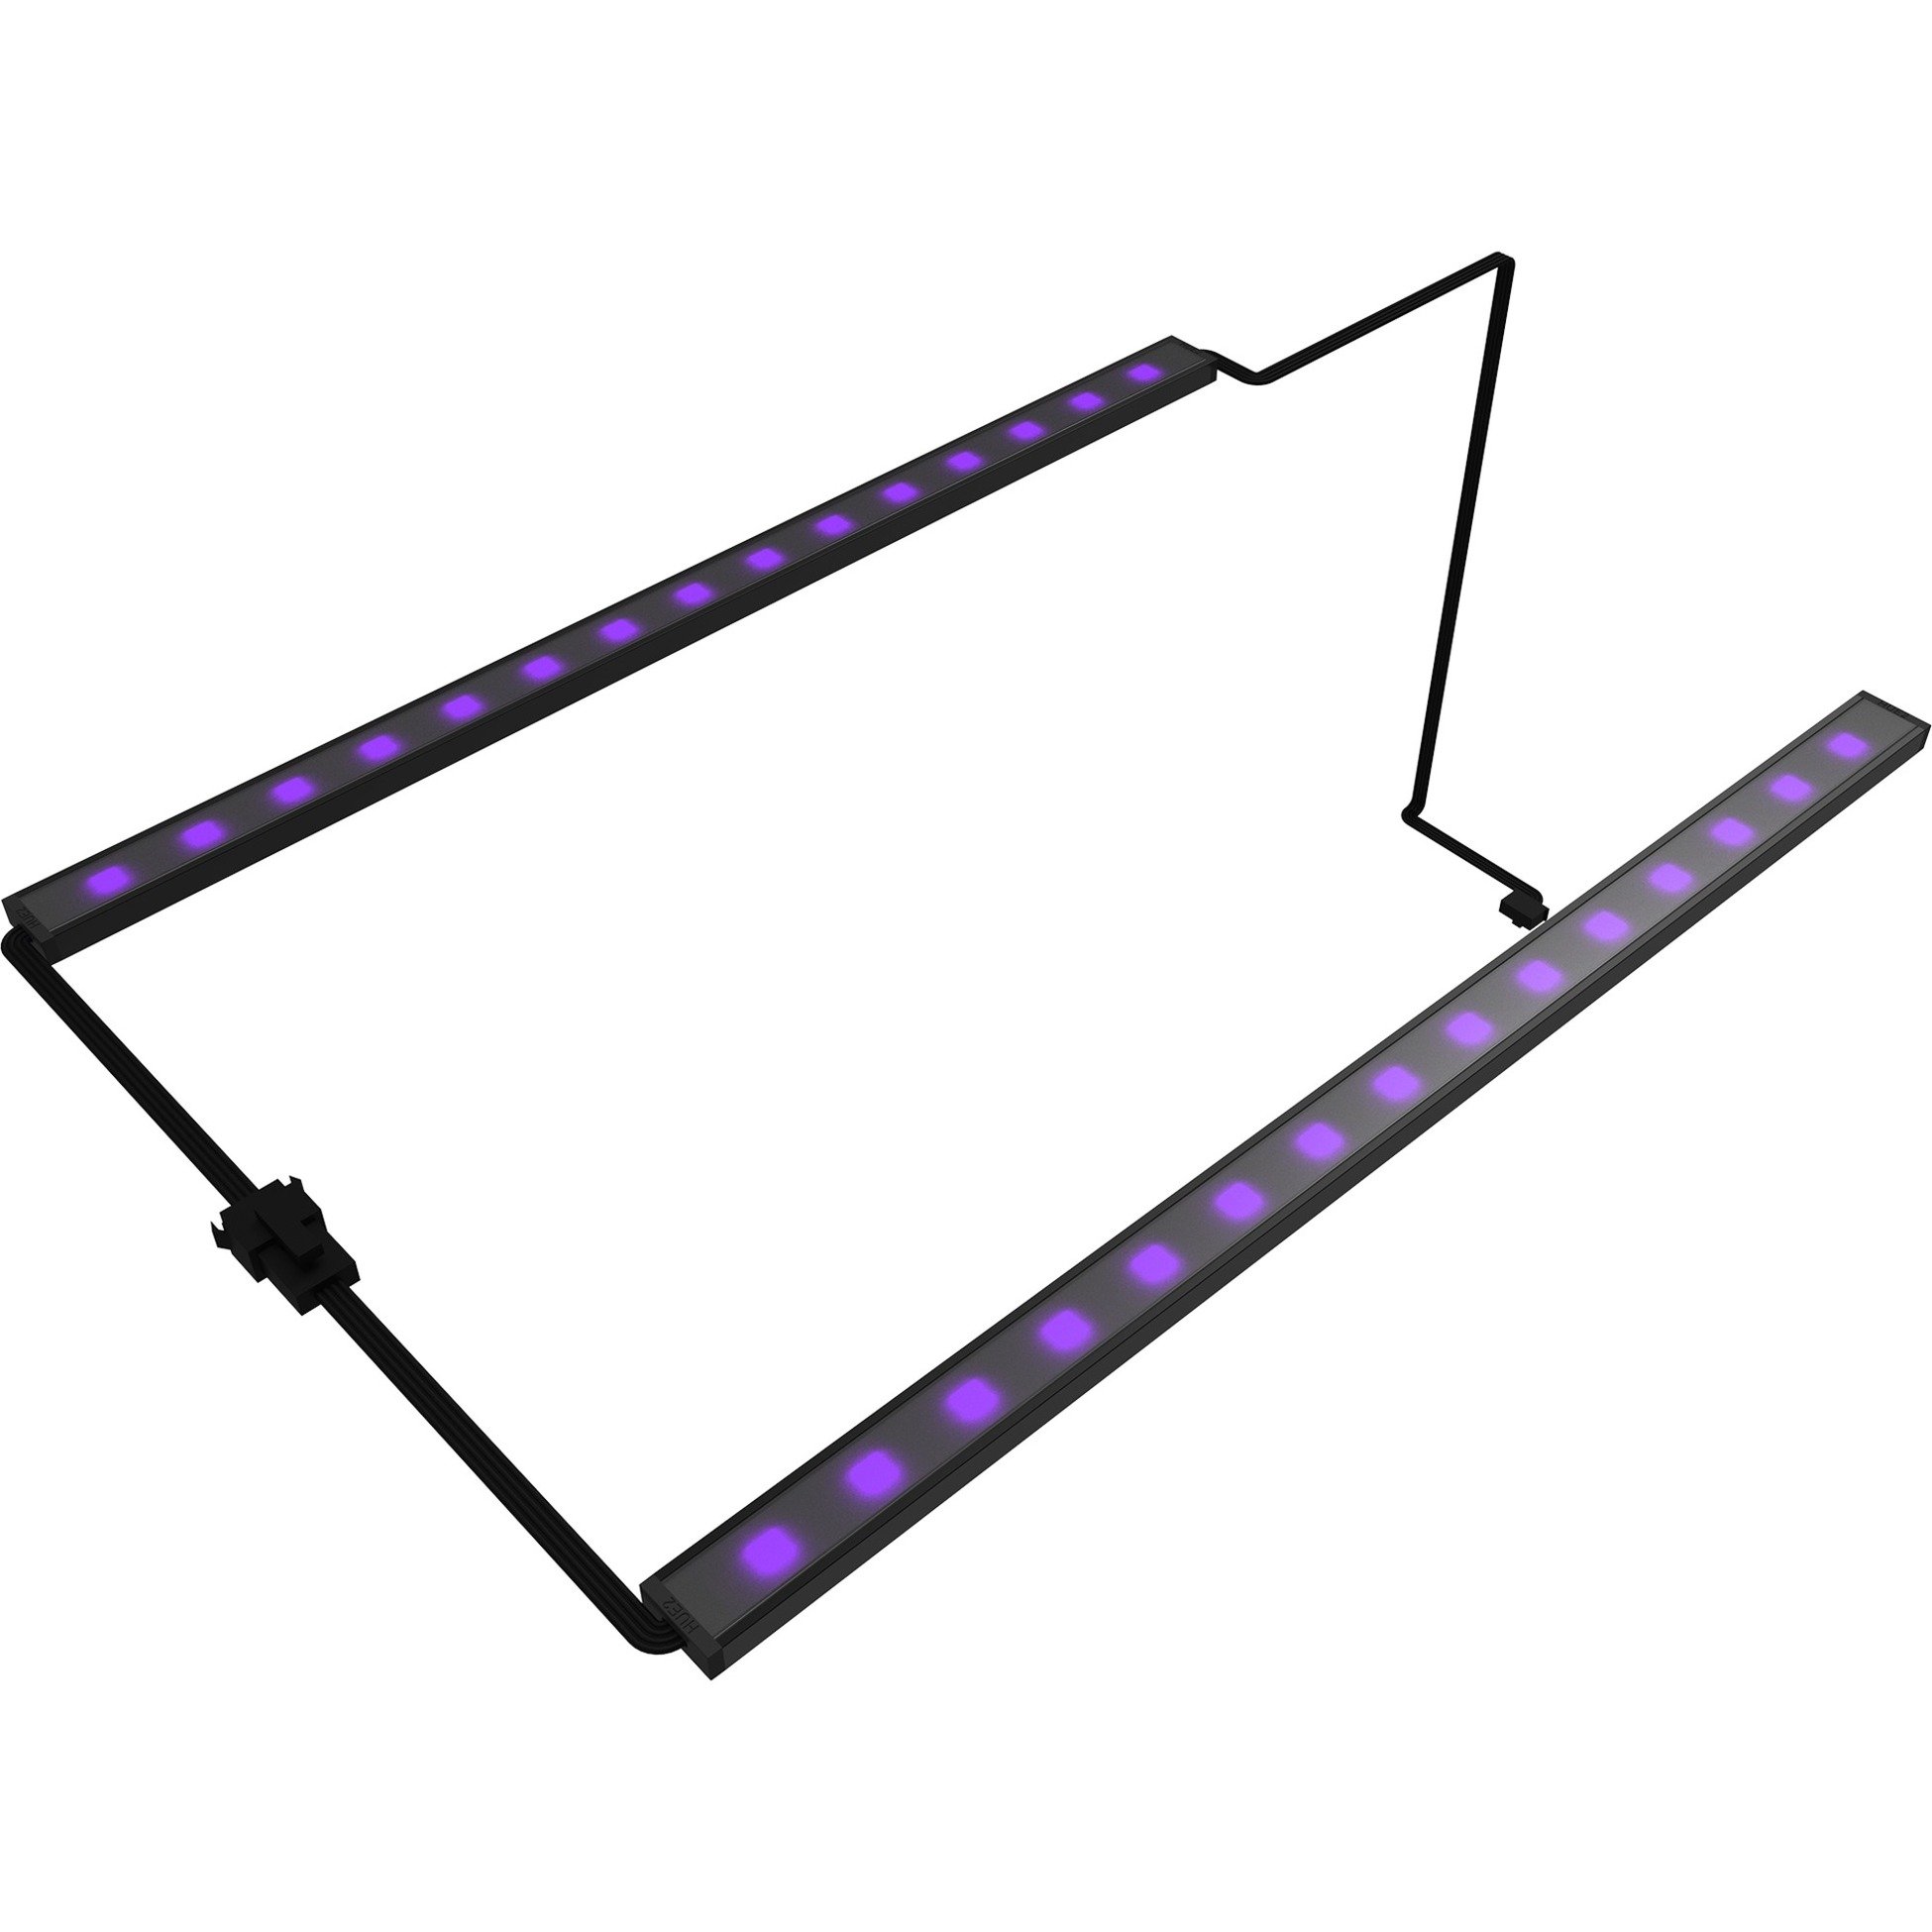 Image of Alternate - Hue 2 Underglow - 300 mm, LED-Streifen online einkaufen bei Alternate